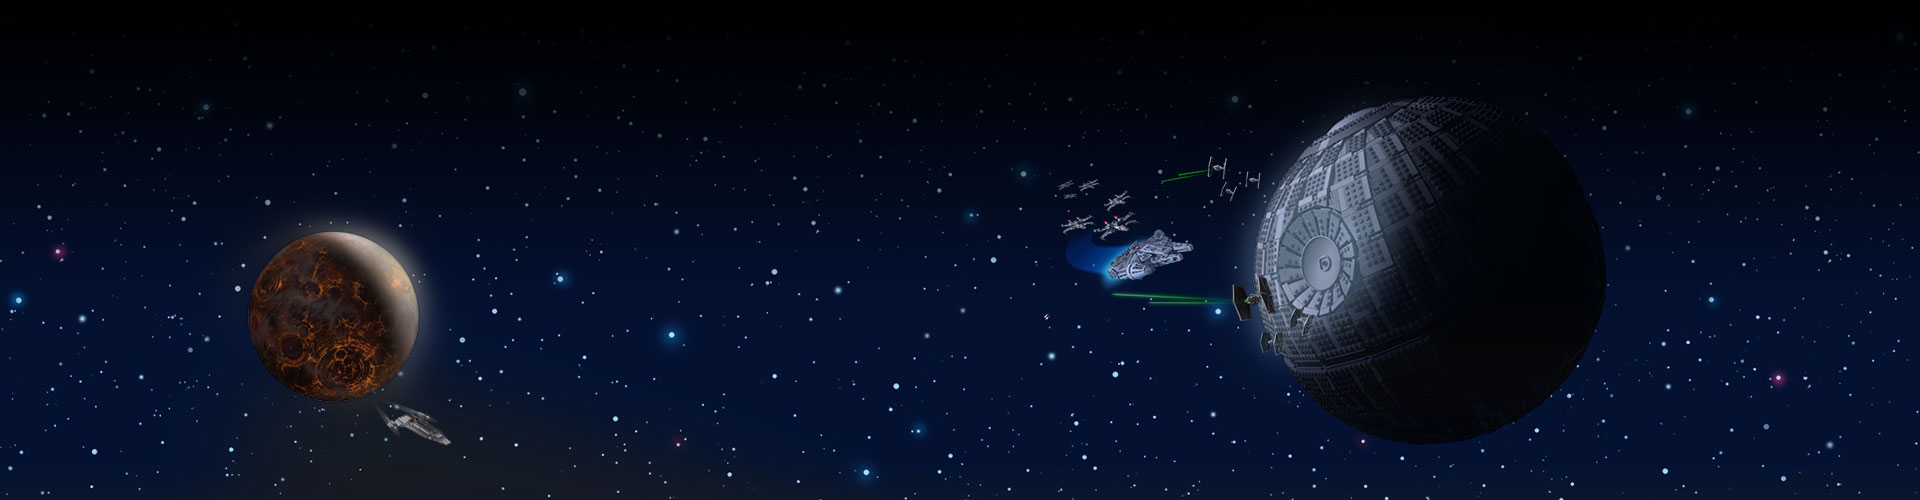 太空中的兩個敵人基地與背景中的繁星。